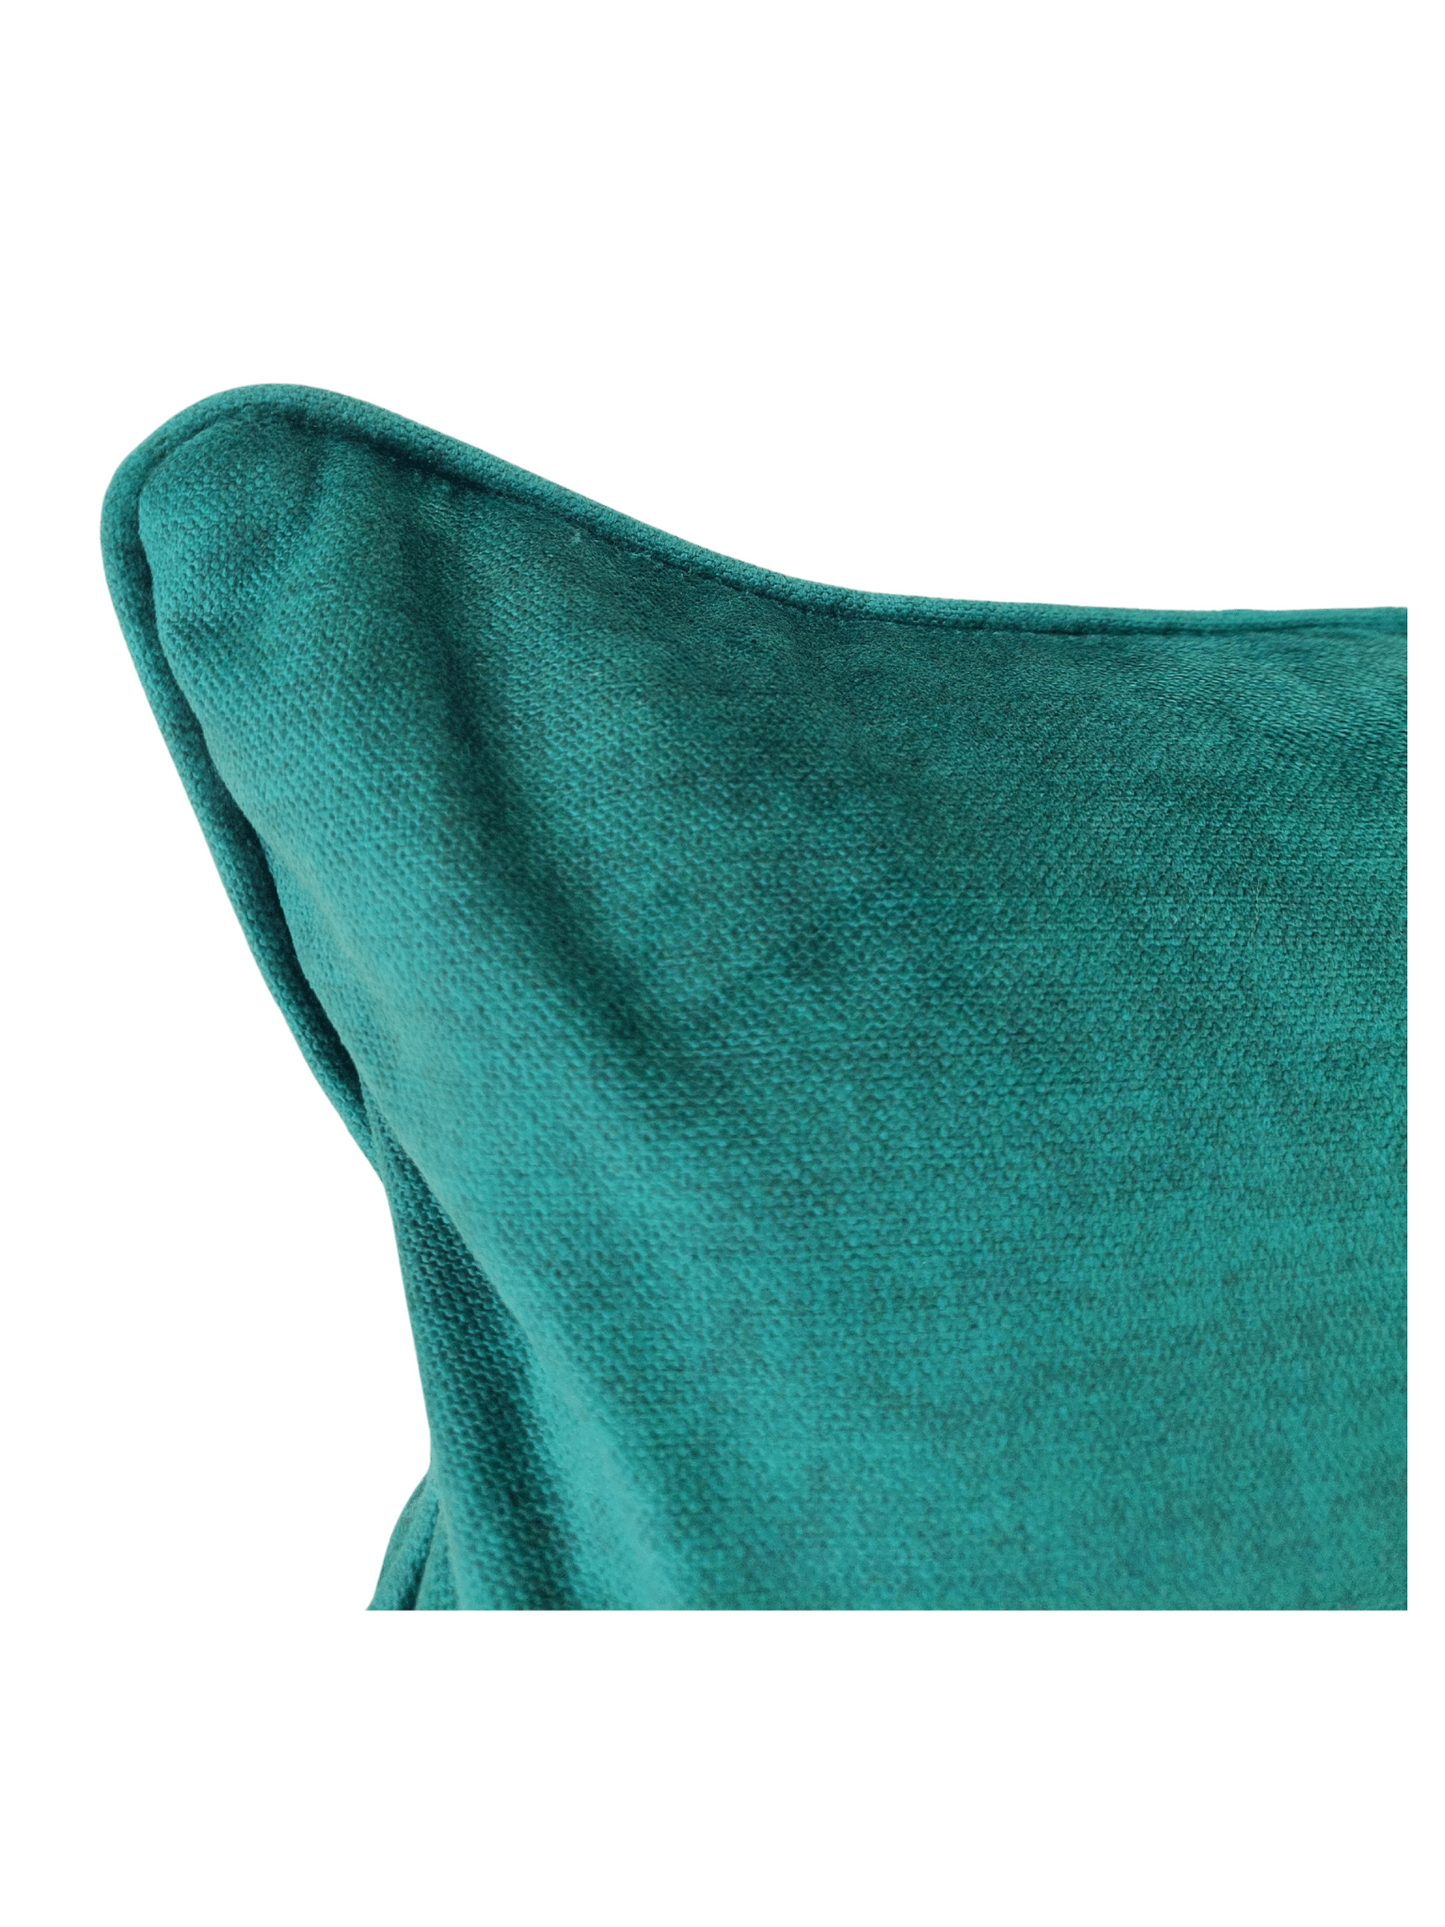 Emerald green cushion